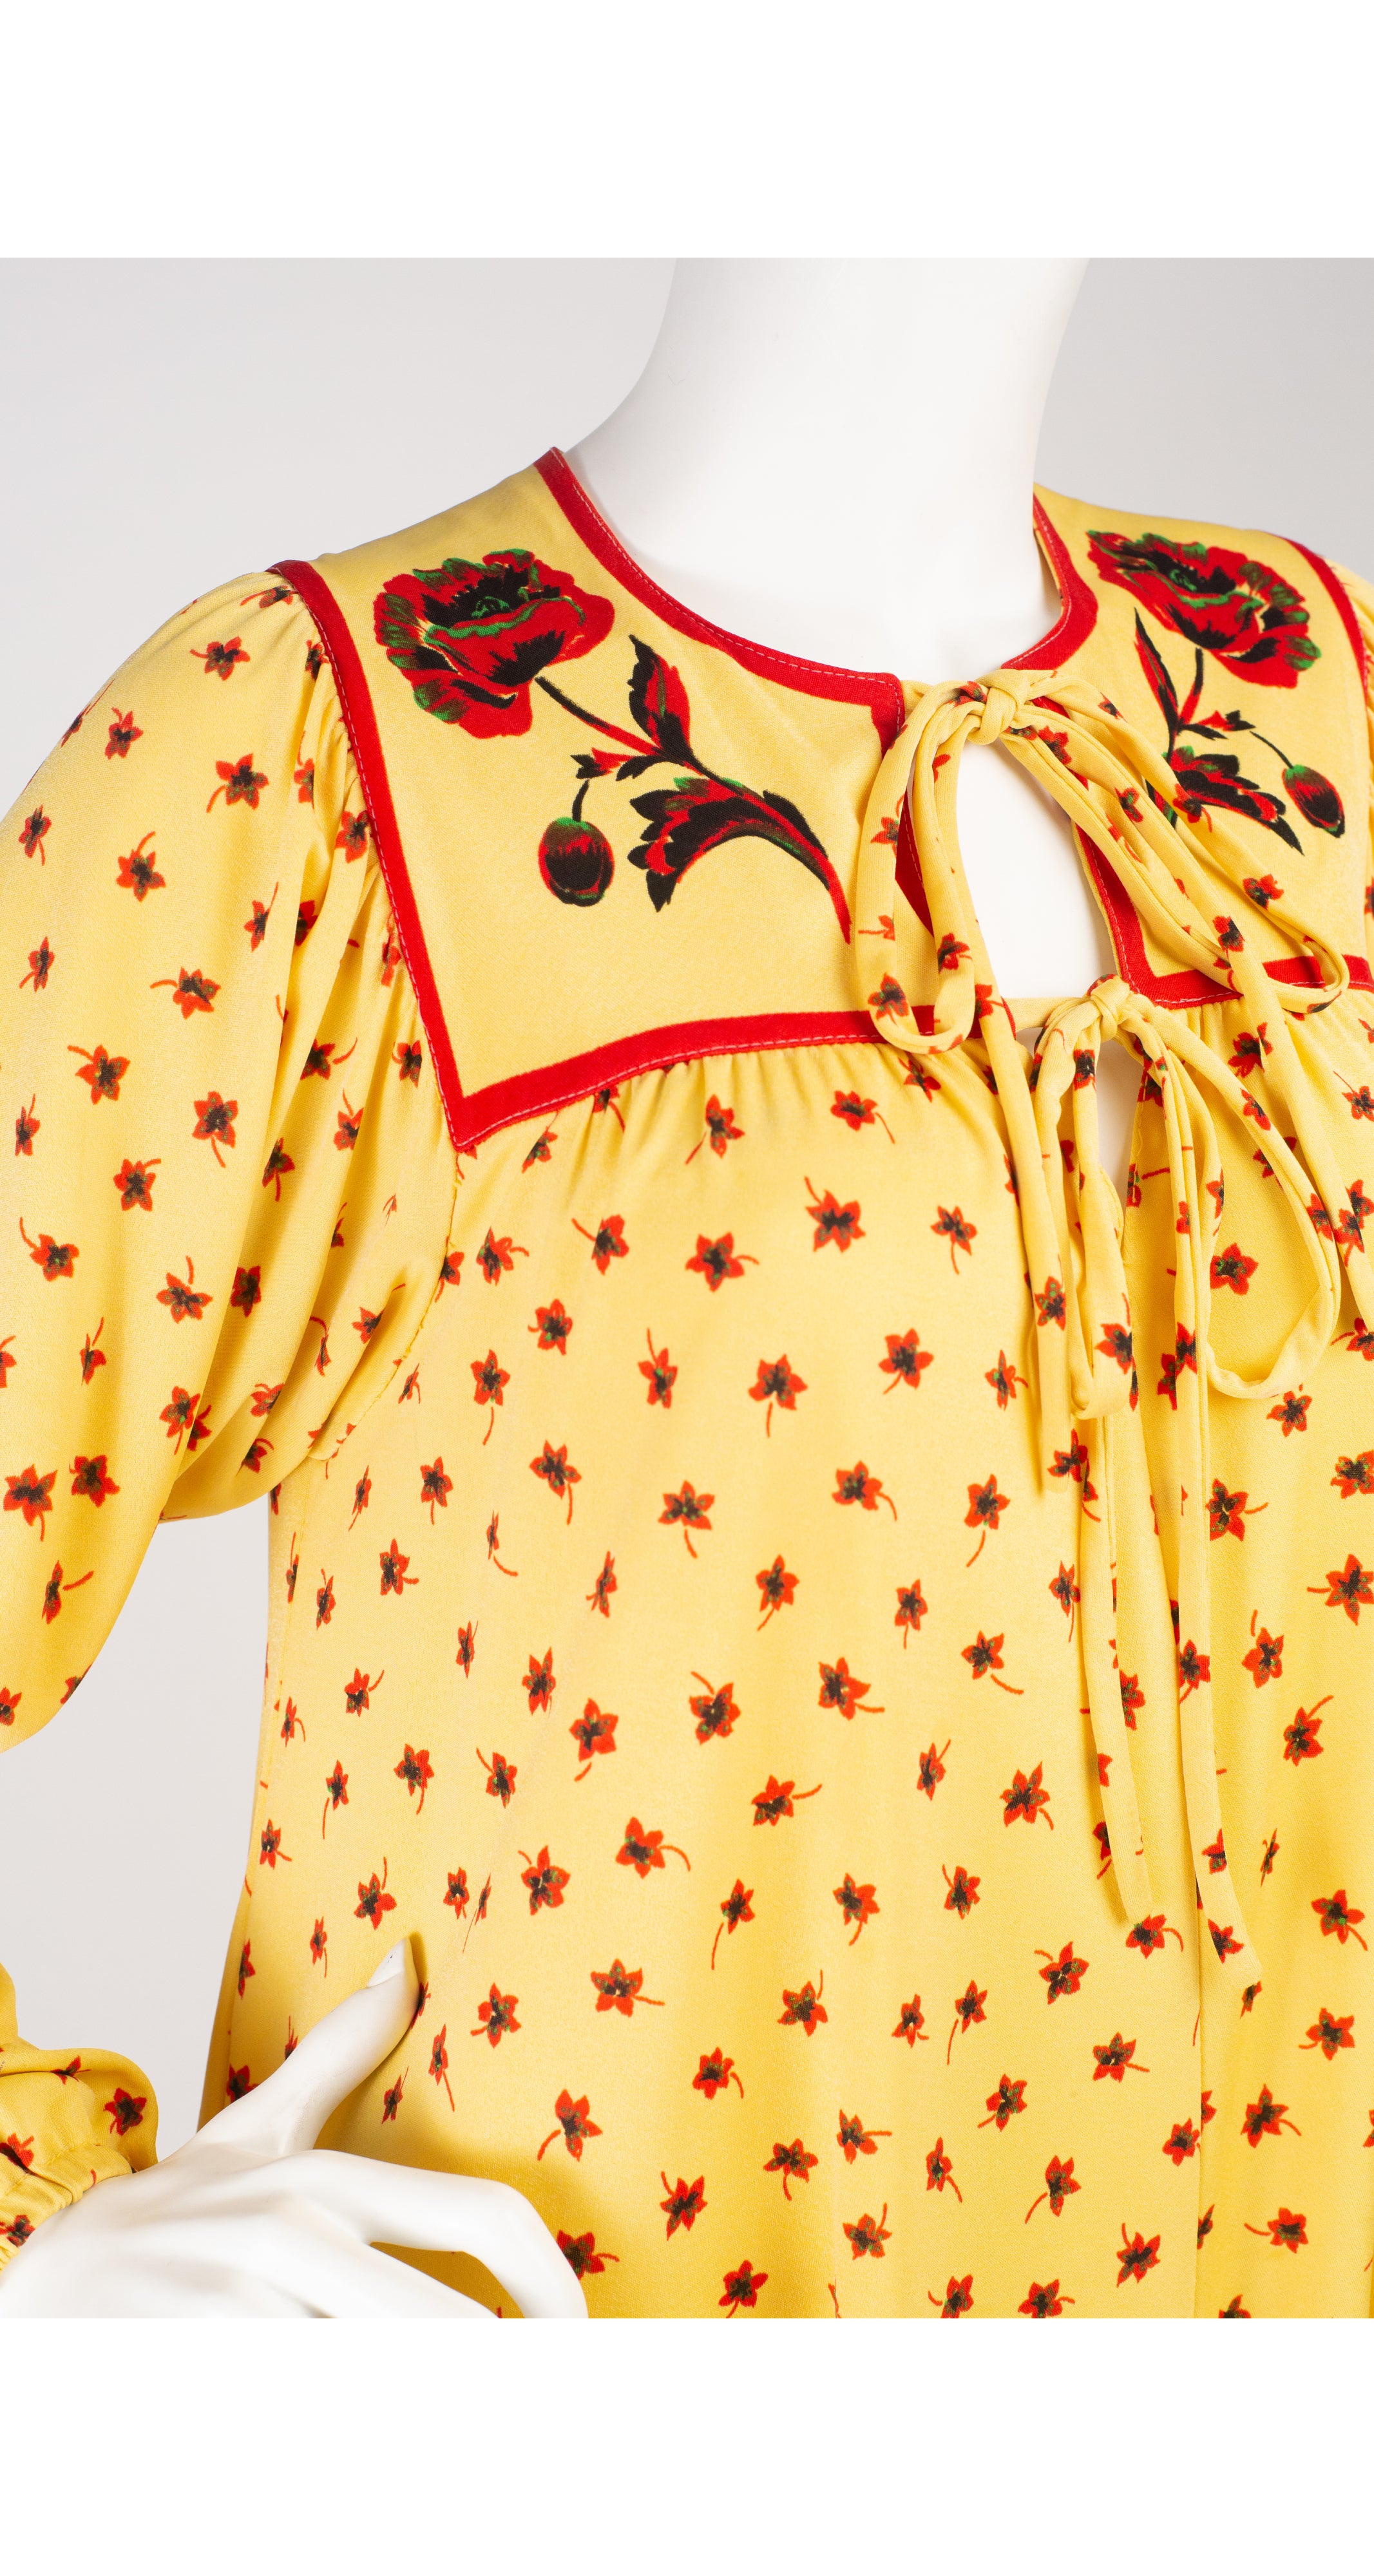 1970s Floral Print Yellow Jersey Bohemian Dress